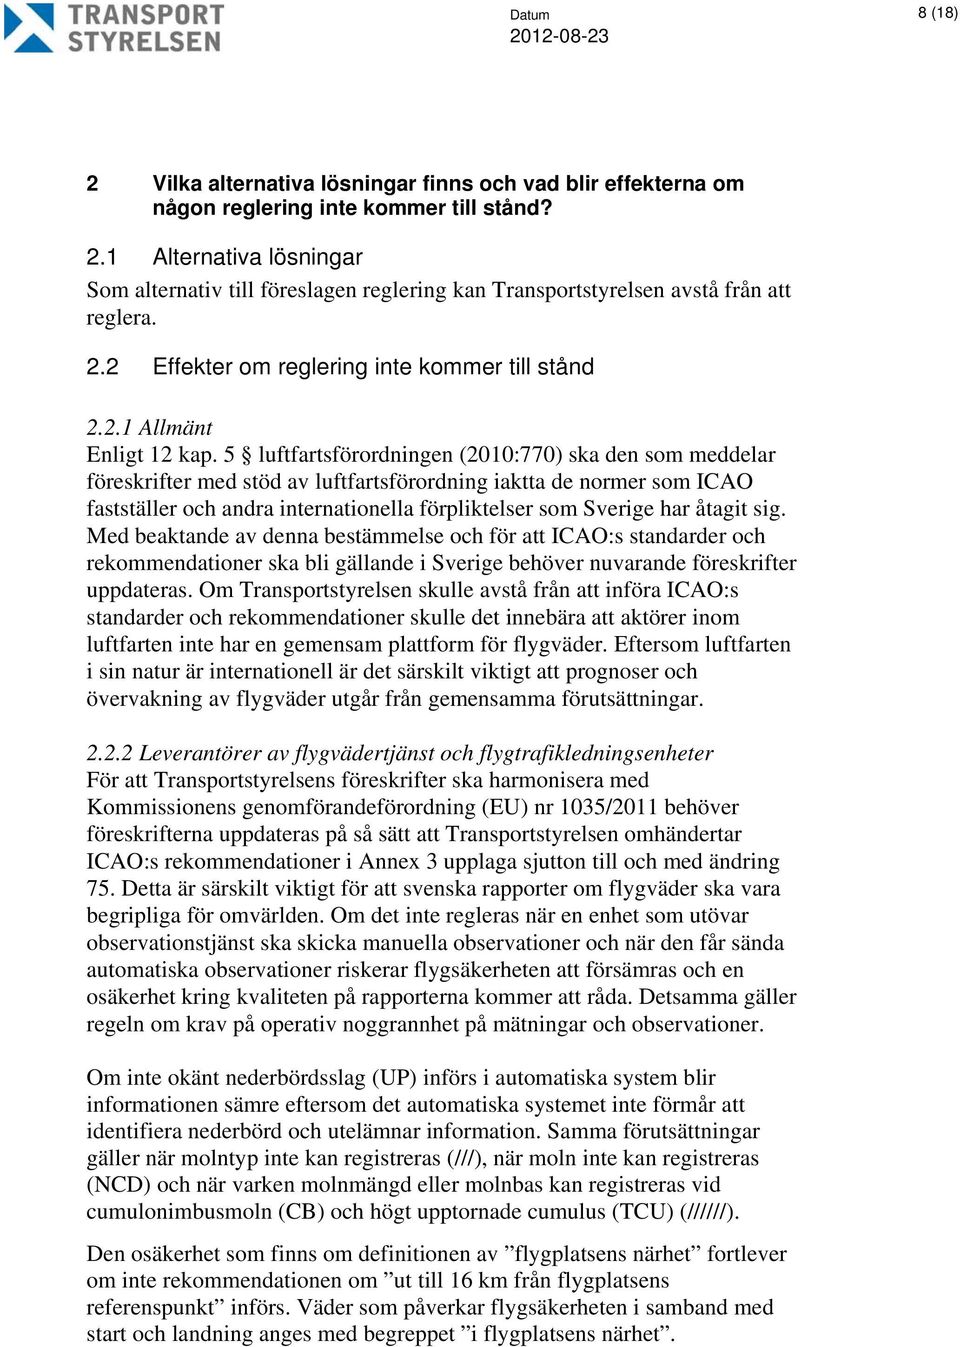 5 luftfartsförordningen (2010:770) ska den som meddelar föreskrifter med stöd av luftfartsförordning iaktta de normer som ICAO fastställer och andra internationella förpliktelser som Sverige har